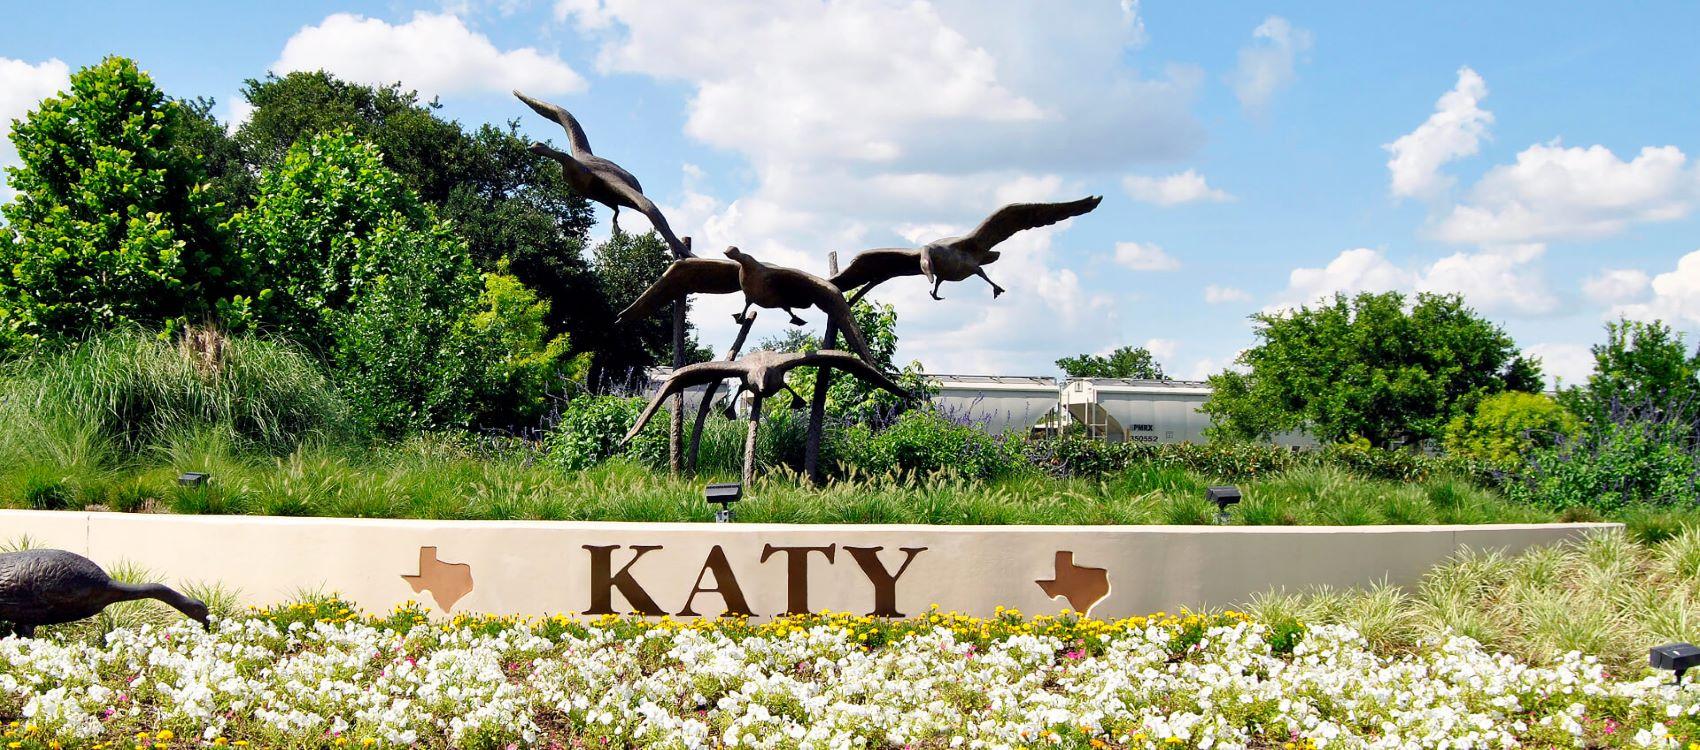 Katy, TX